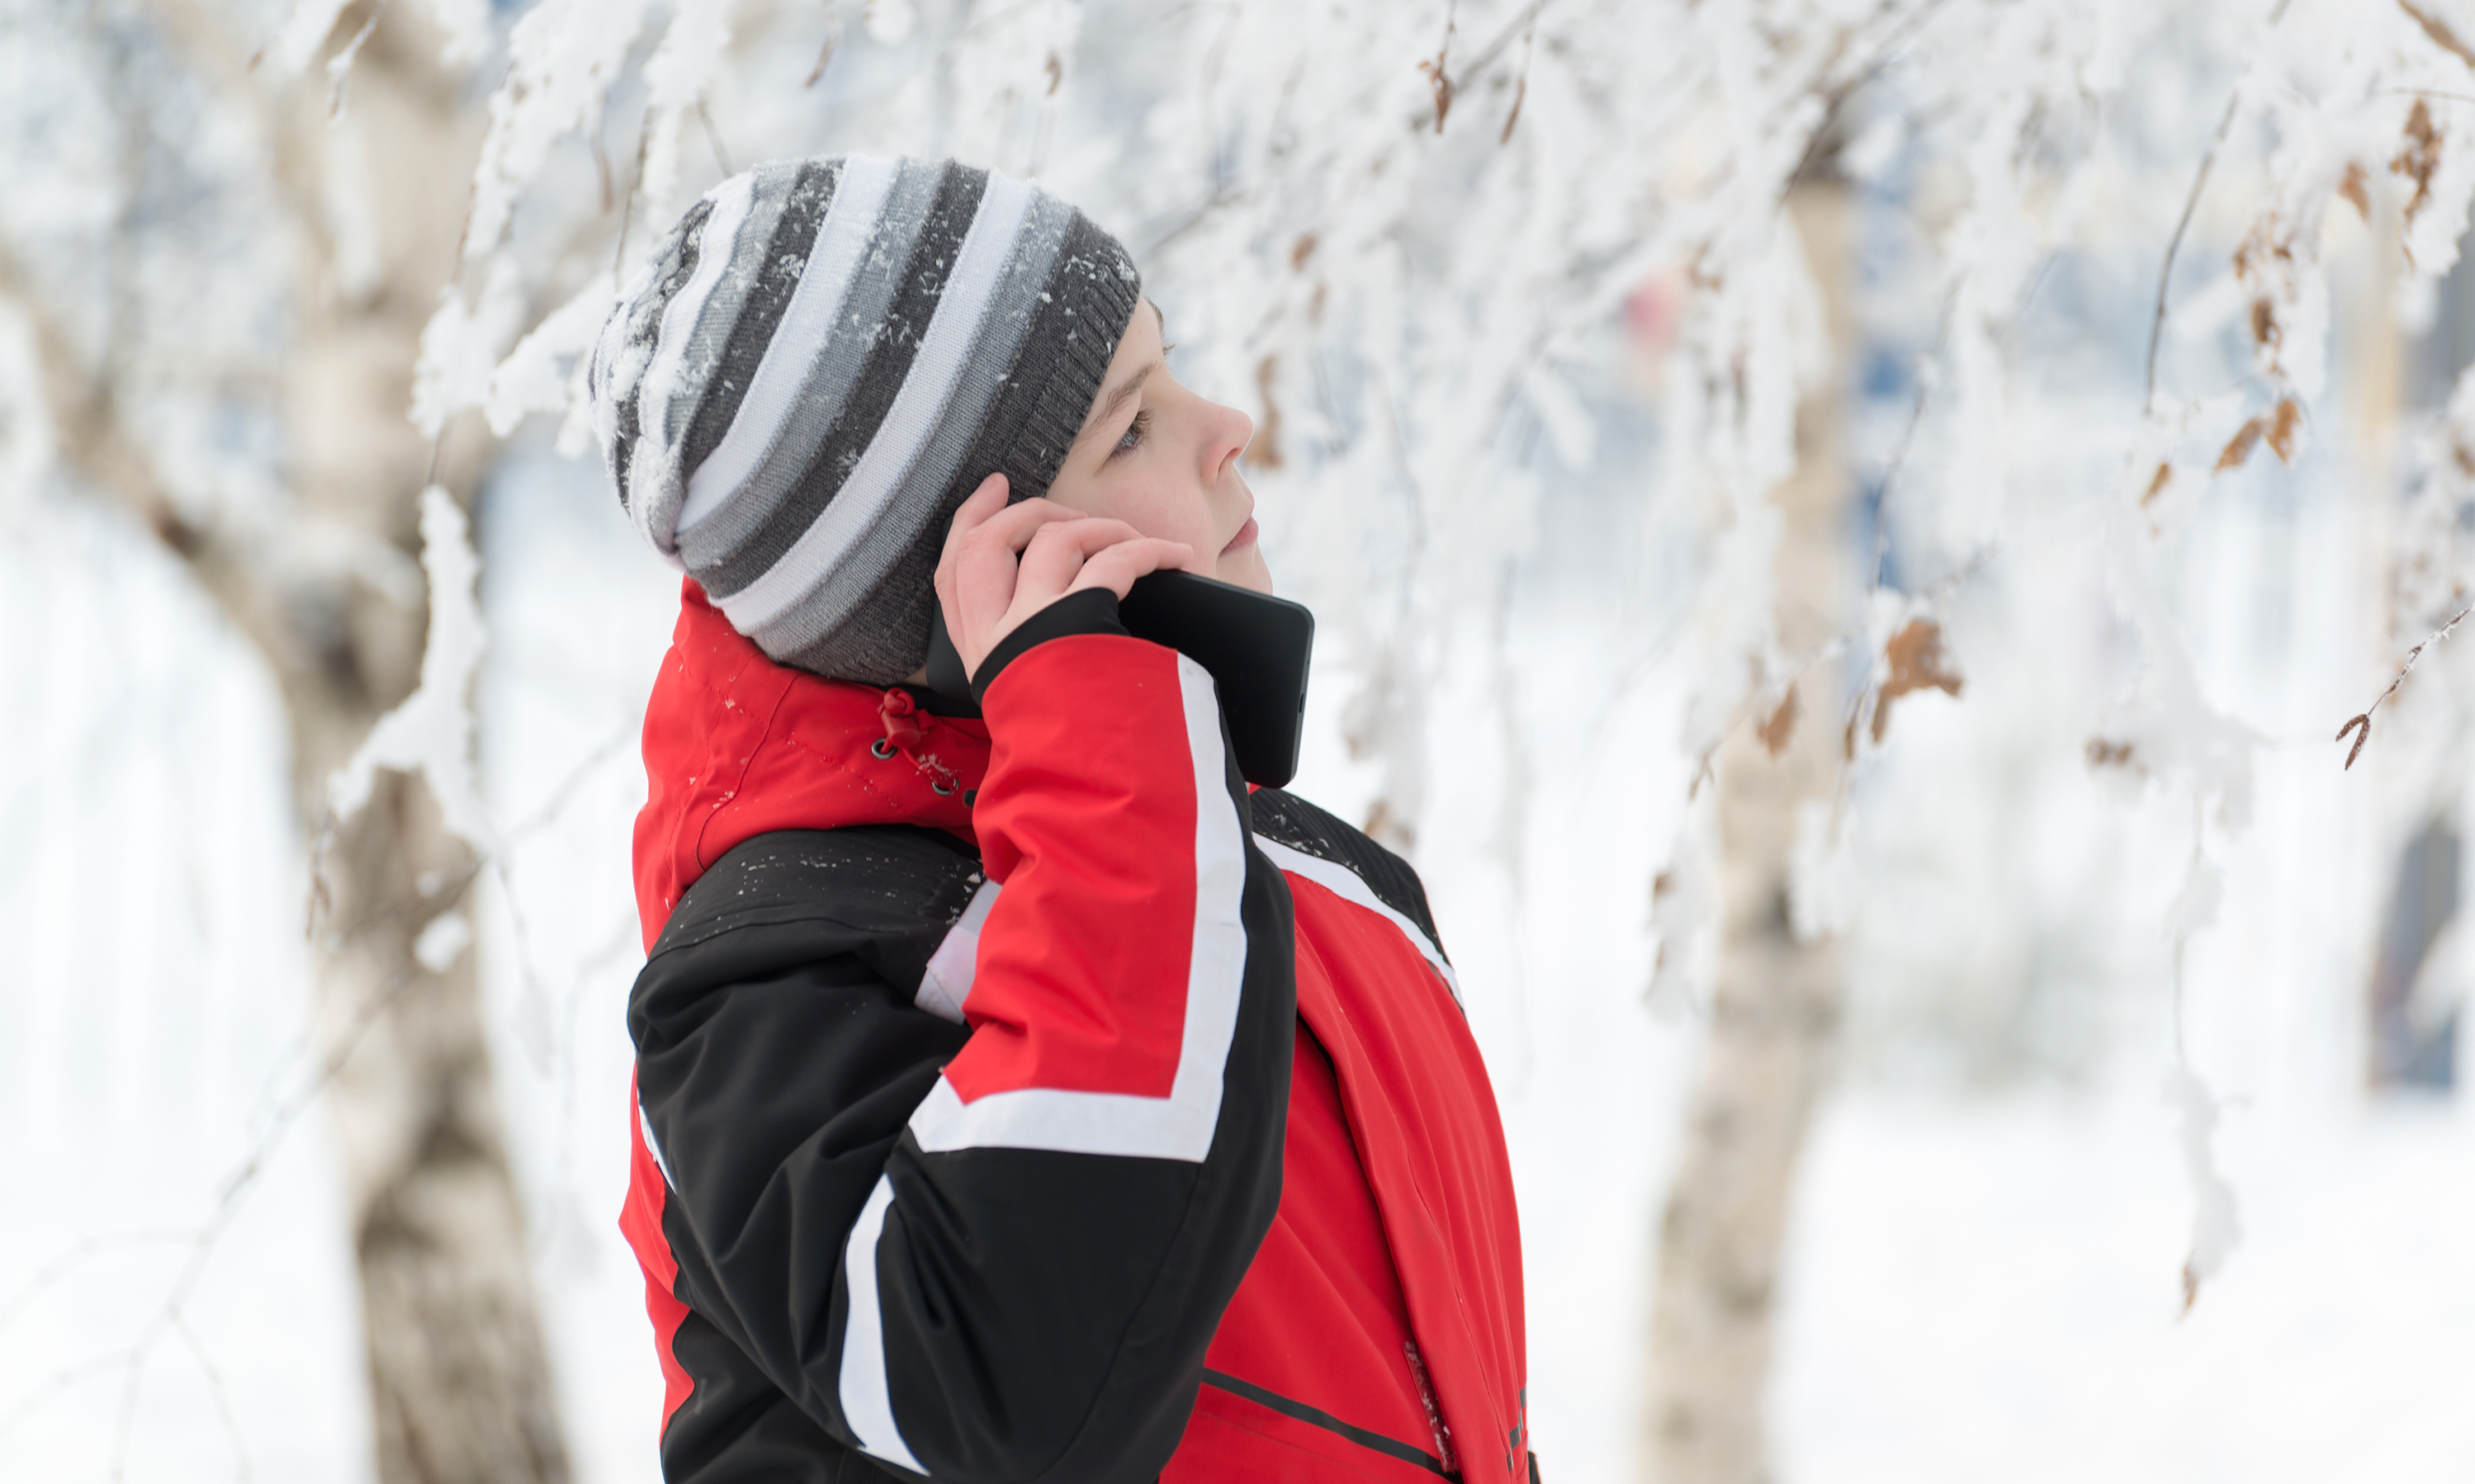 Du kan selvfølgelig bruke telefonen på vinteren også. Men ikke legg den fra deg i kulda. Foto: Shutterstock